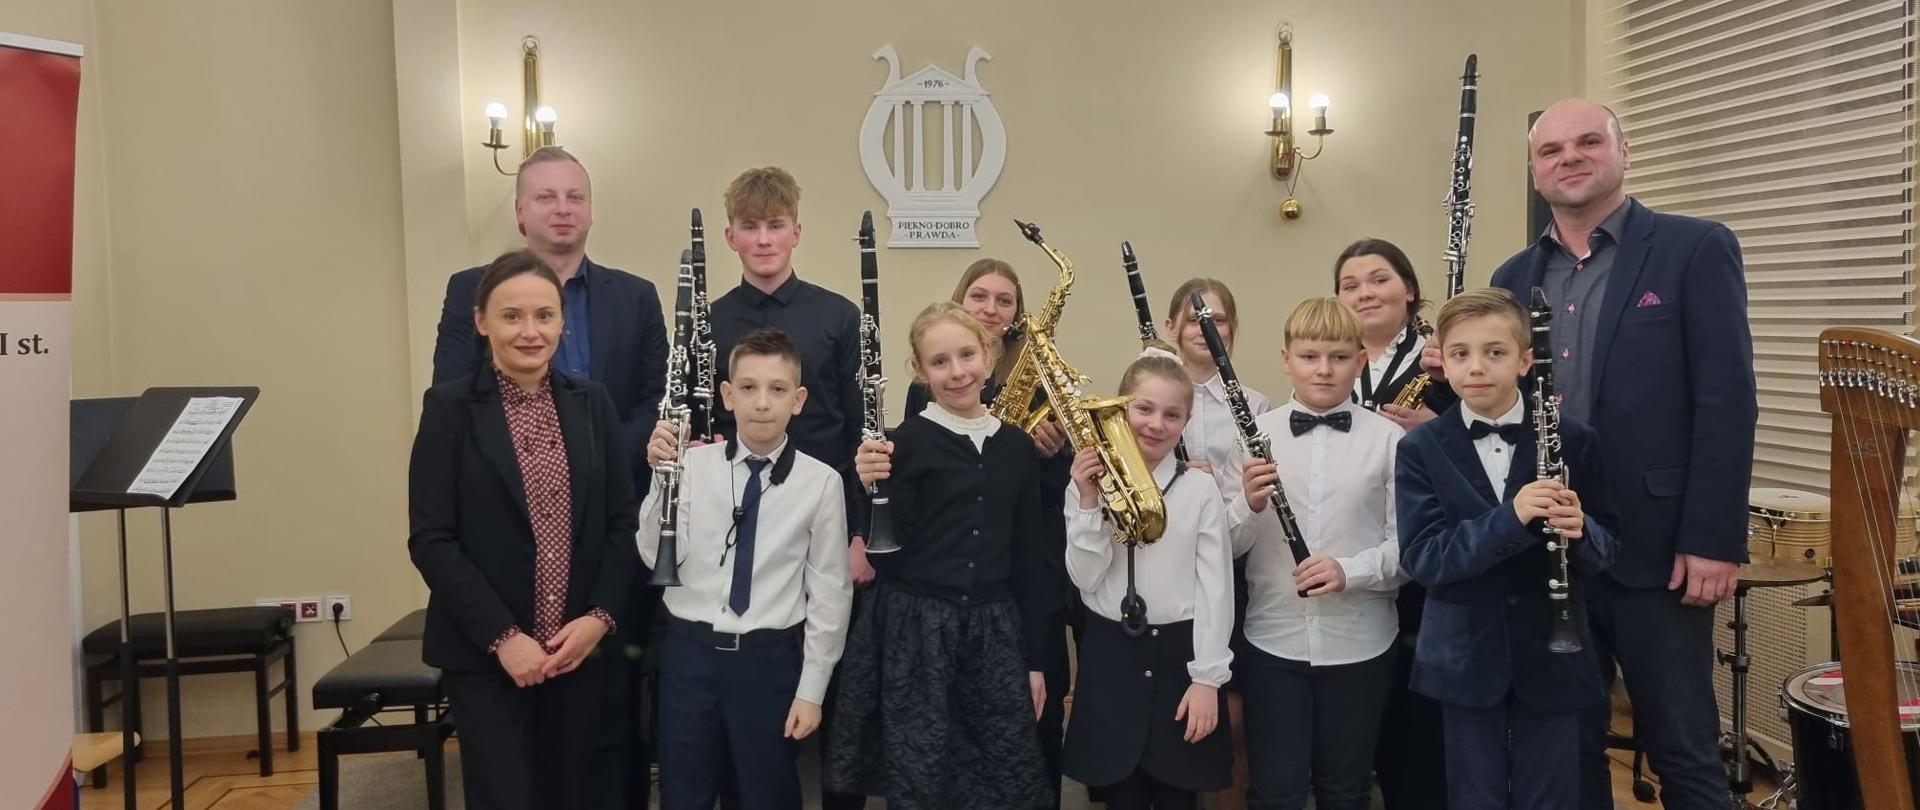 Uczniowie i nauczyciele. Zdjęcie wykonane w auli szkoły. Uczniowie trzymają w dłoniach saksofony i klarnety.